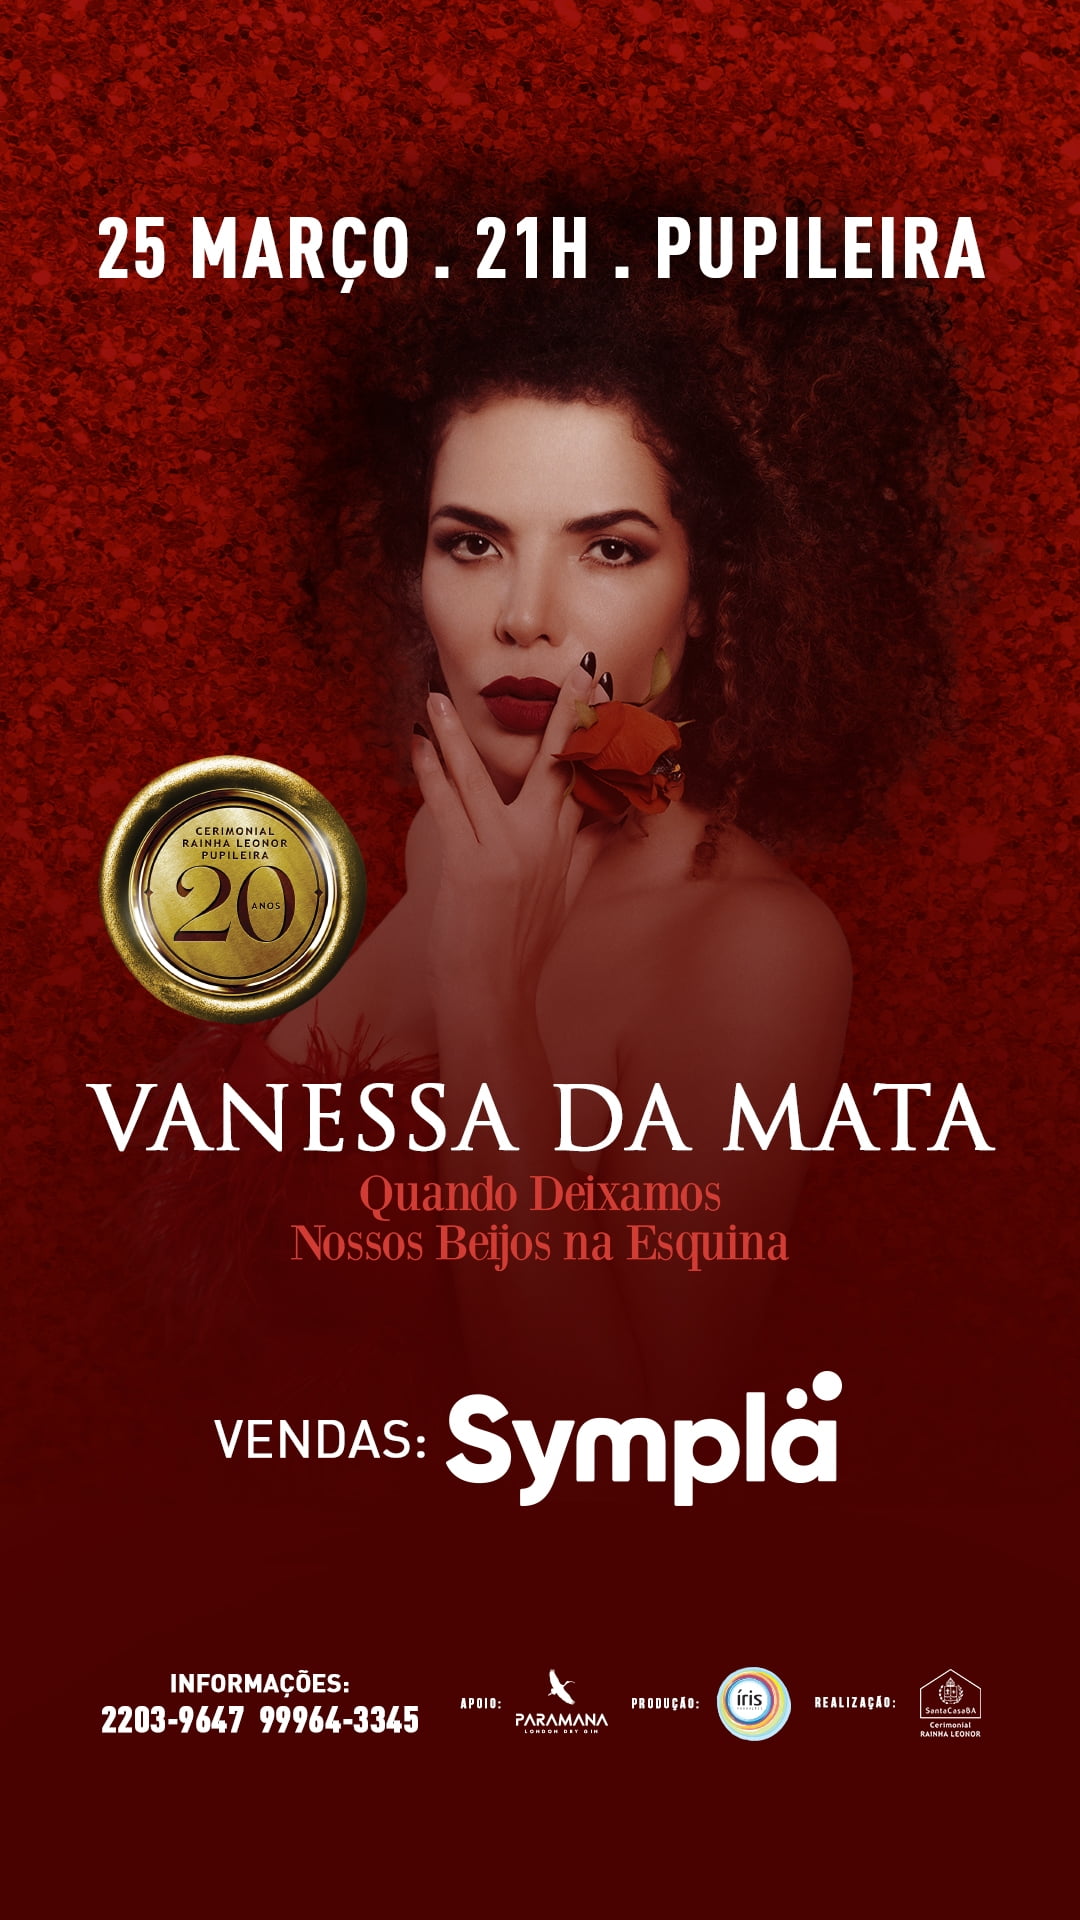 Vanessa da Mata faz show em Salvador em comemoração aos 20 anos da Pupileira